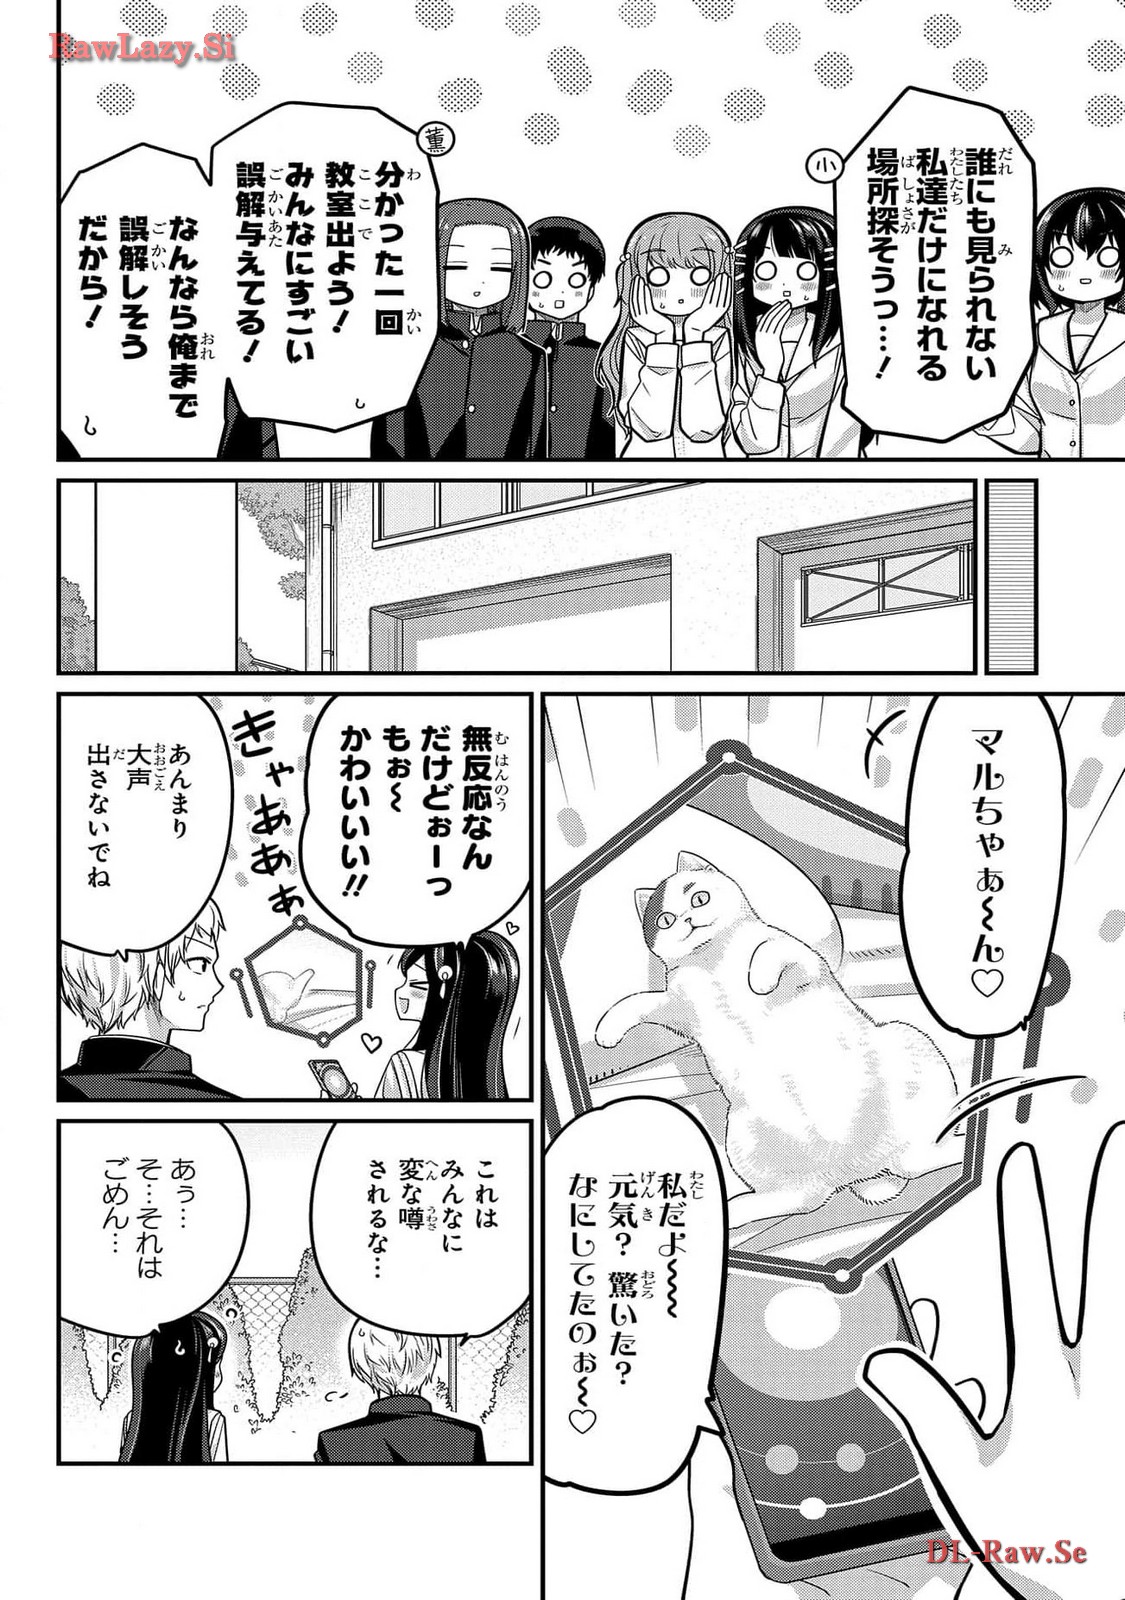 Kawaisugi Crisis - Chapter 97 - Page 22